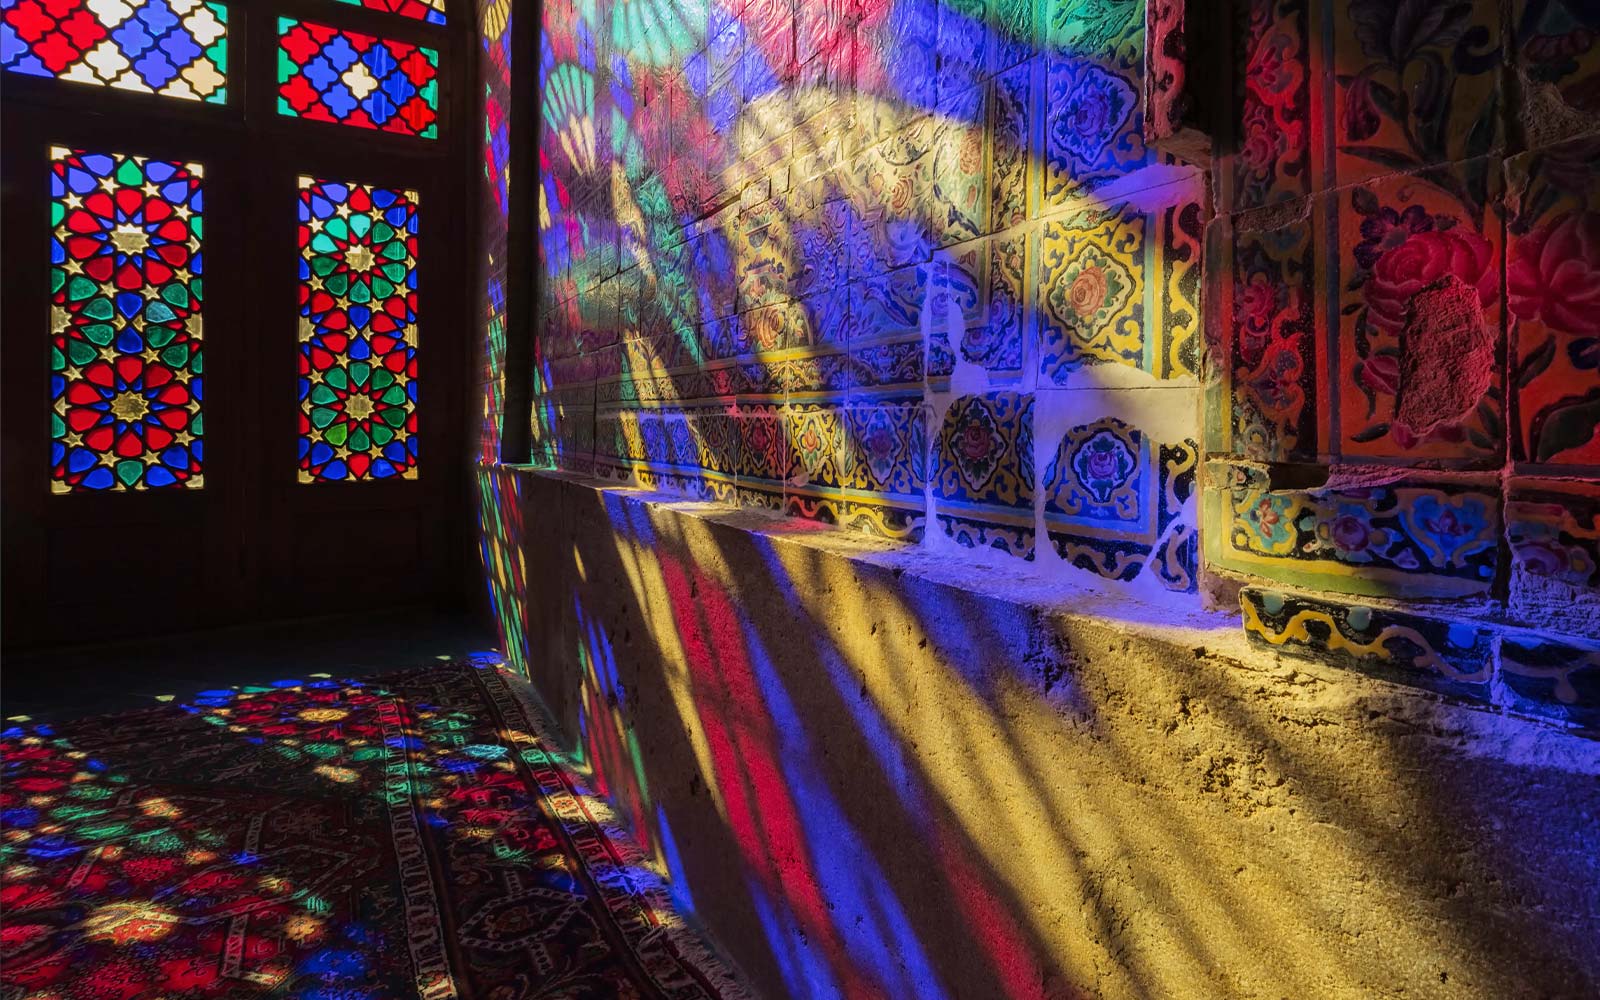 Prizor, ki prikazuje svetlobo, ki seva skozi umazana steklena okna in odseva barve na steni (predvajanje videa).